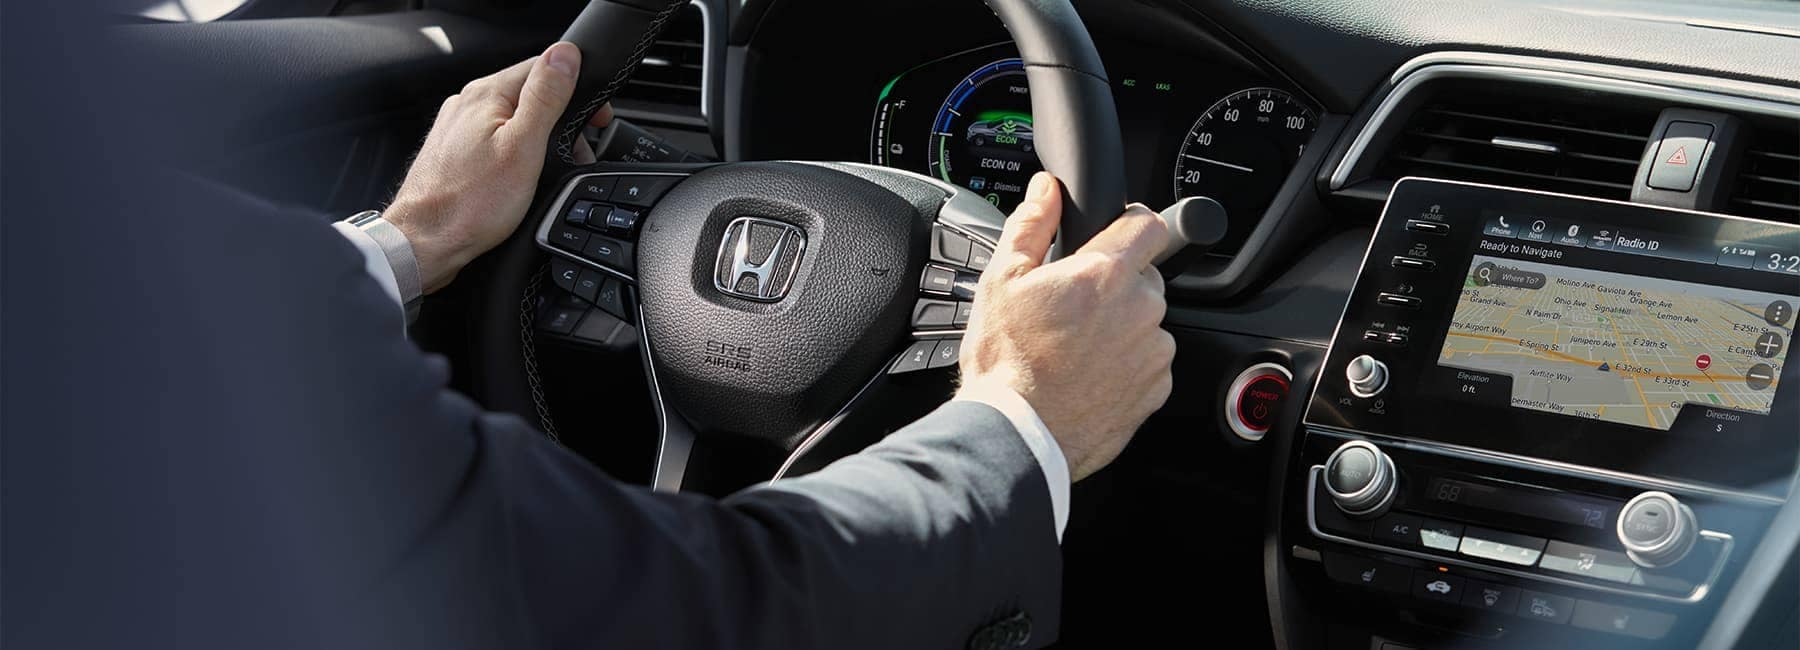 2021-honda-insight-interior-hands-on-steering--wheel